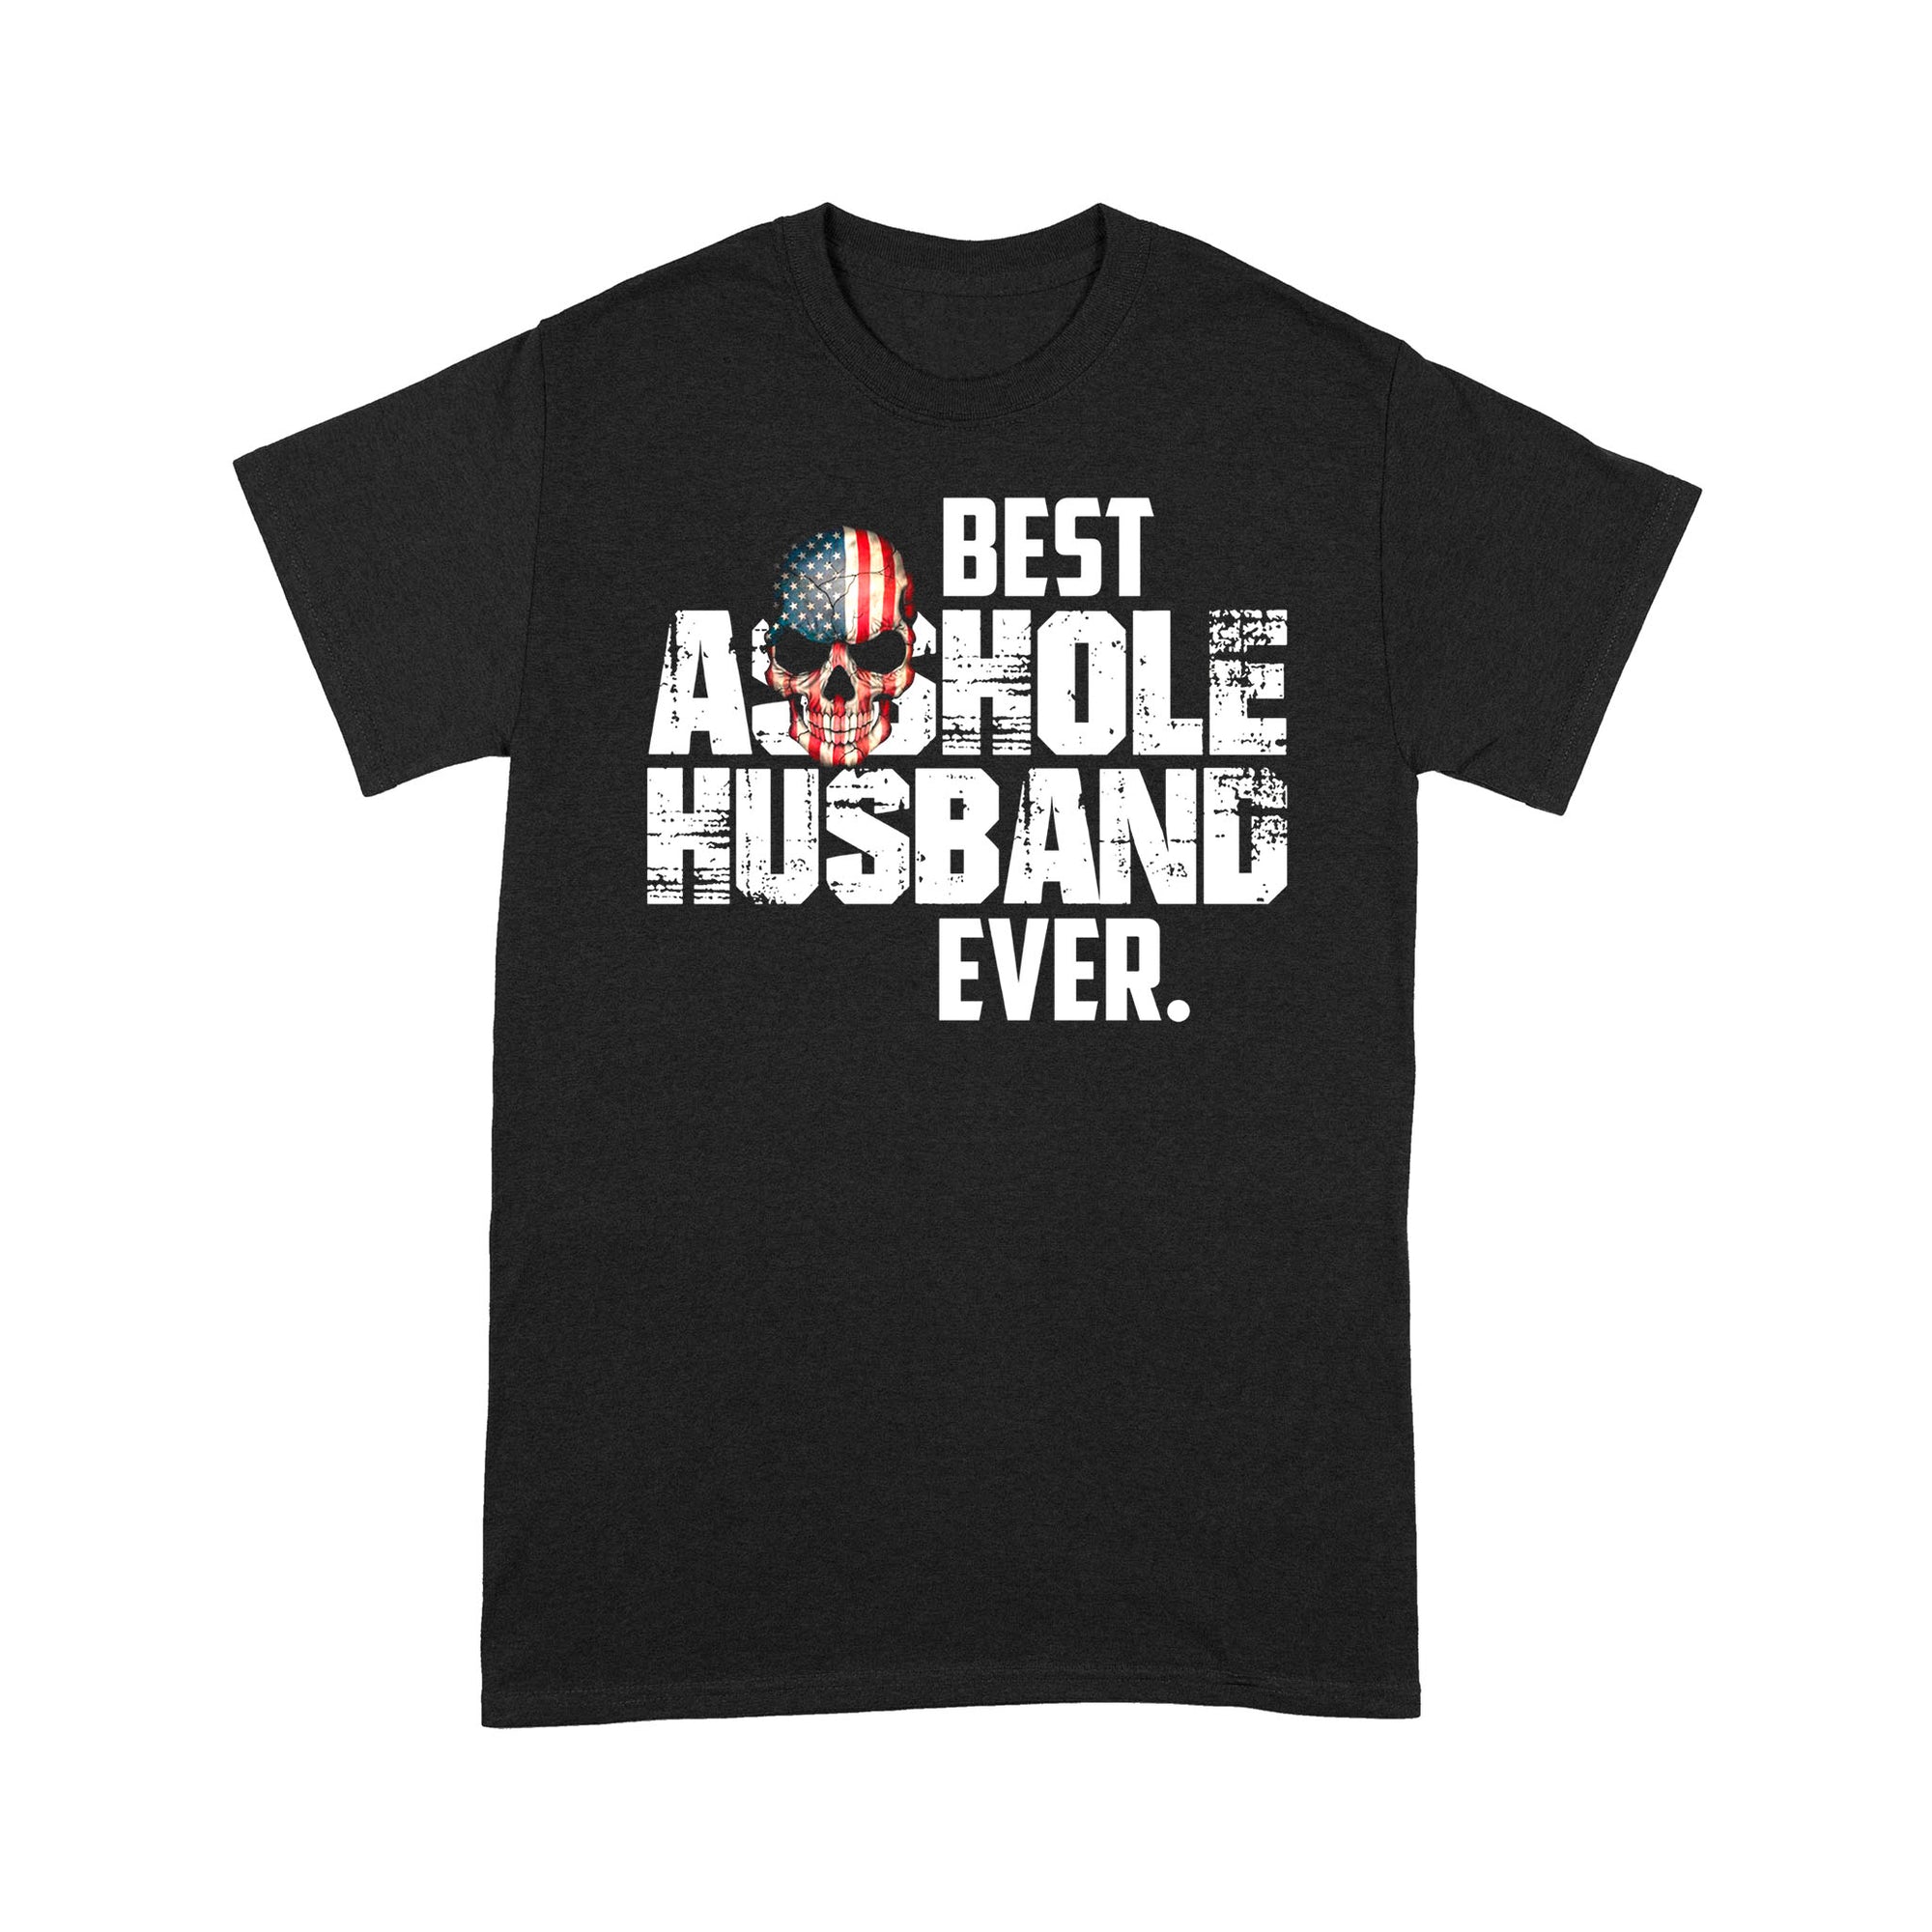 Best Asshole Husband Ever - Standard T-shirt